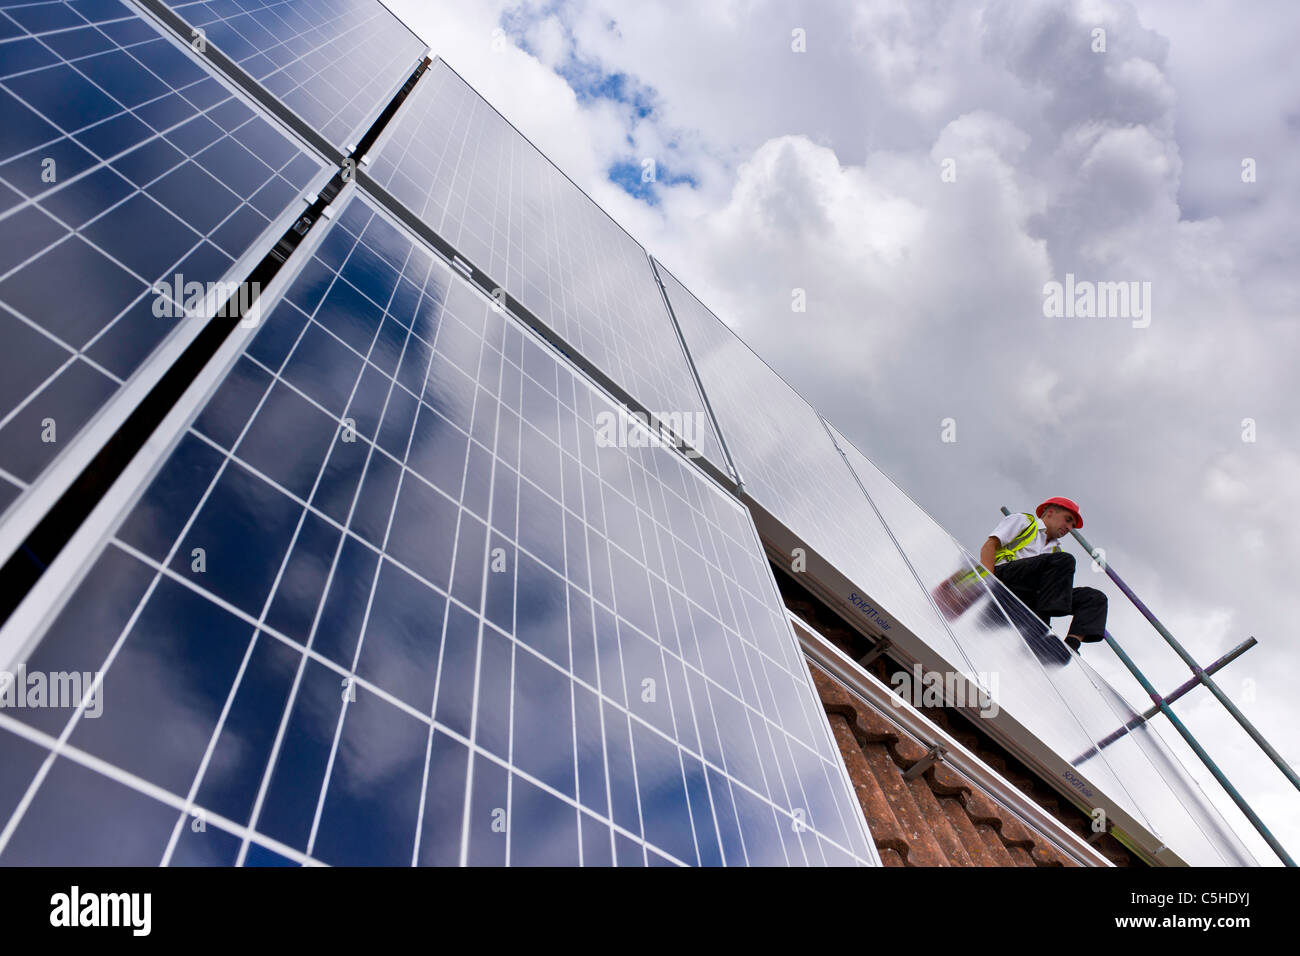 L'installation solaire au Royaume-Uni Banque D'Images